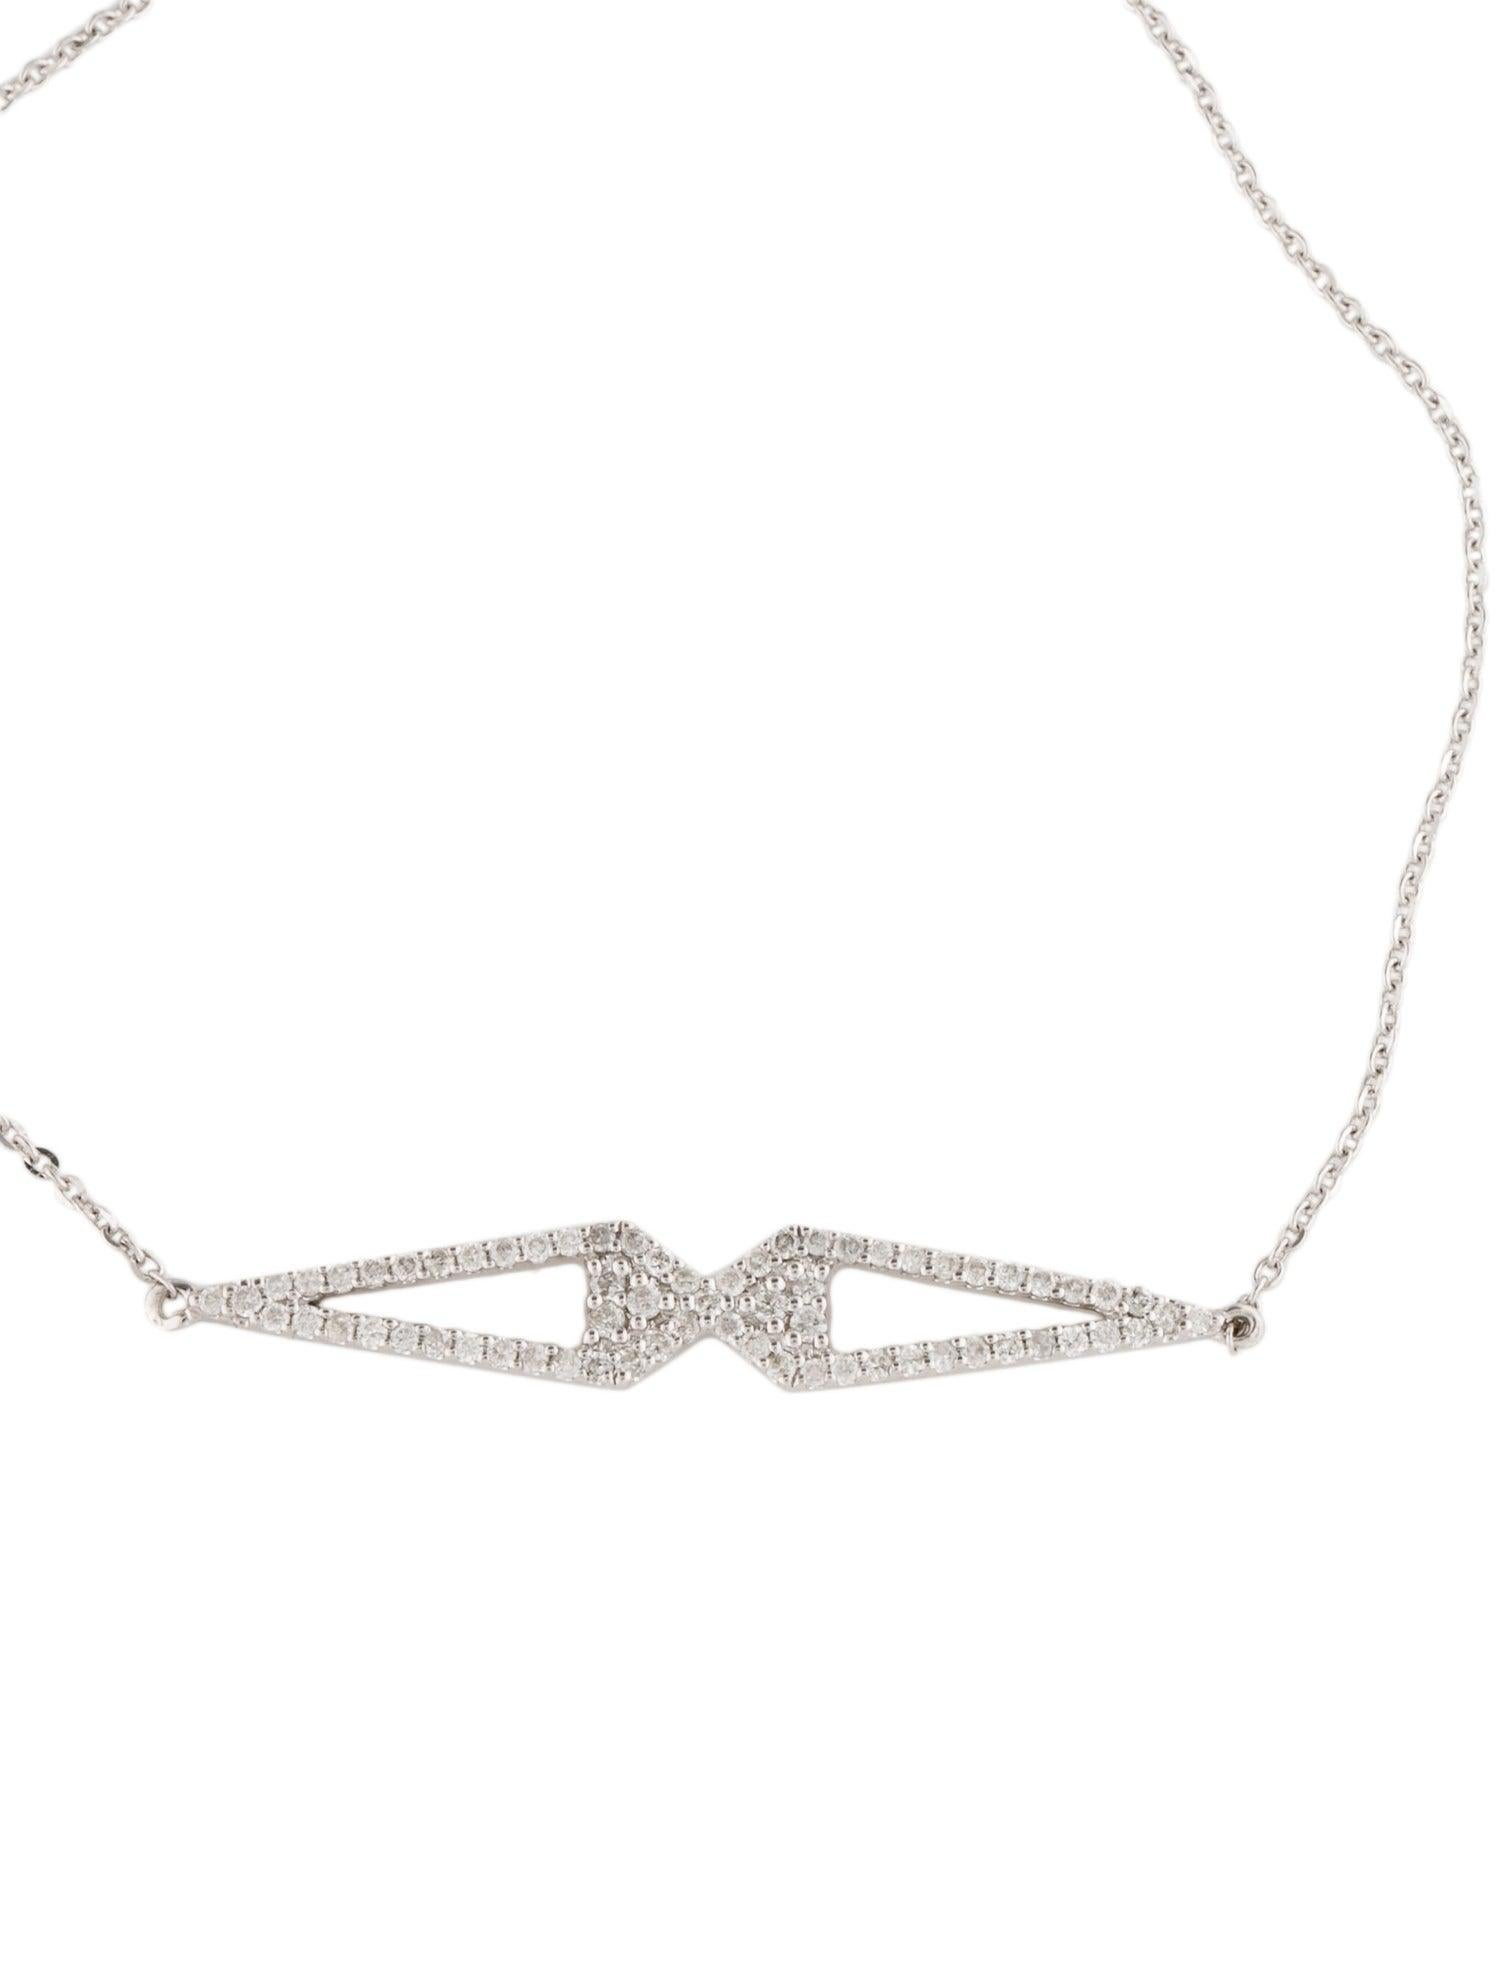 Women's 14K Diamond Link Bracelet - Sparkling Elegance, Timeless Glamour, Luxury Design For Sale